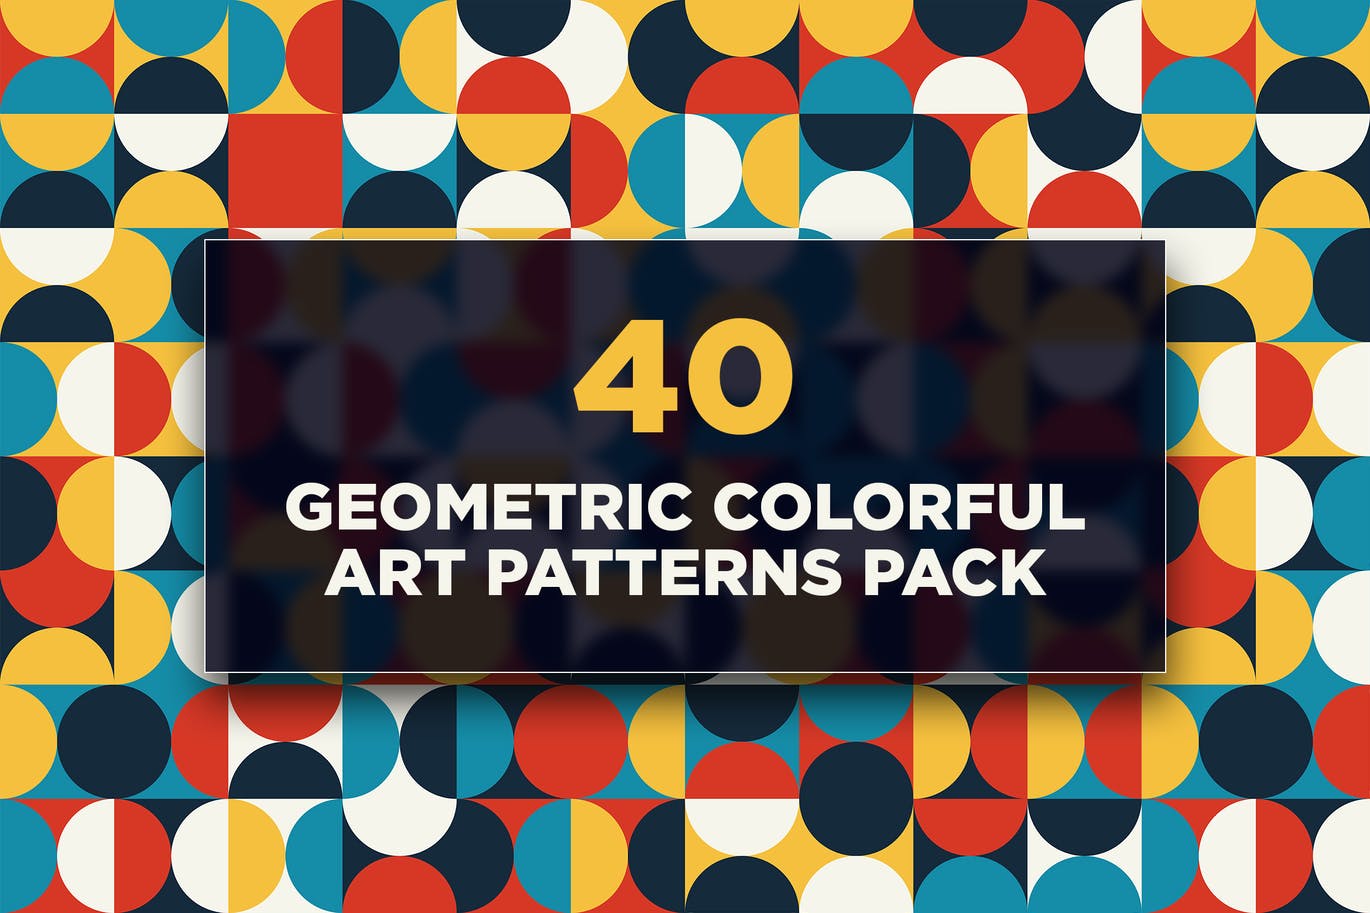 40个几何彩色艺术图案包 40 Geometric Colorful Art Patterns Pack 图片素材 第1张